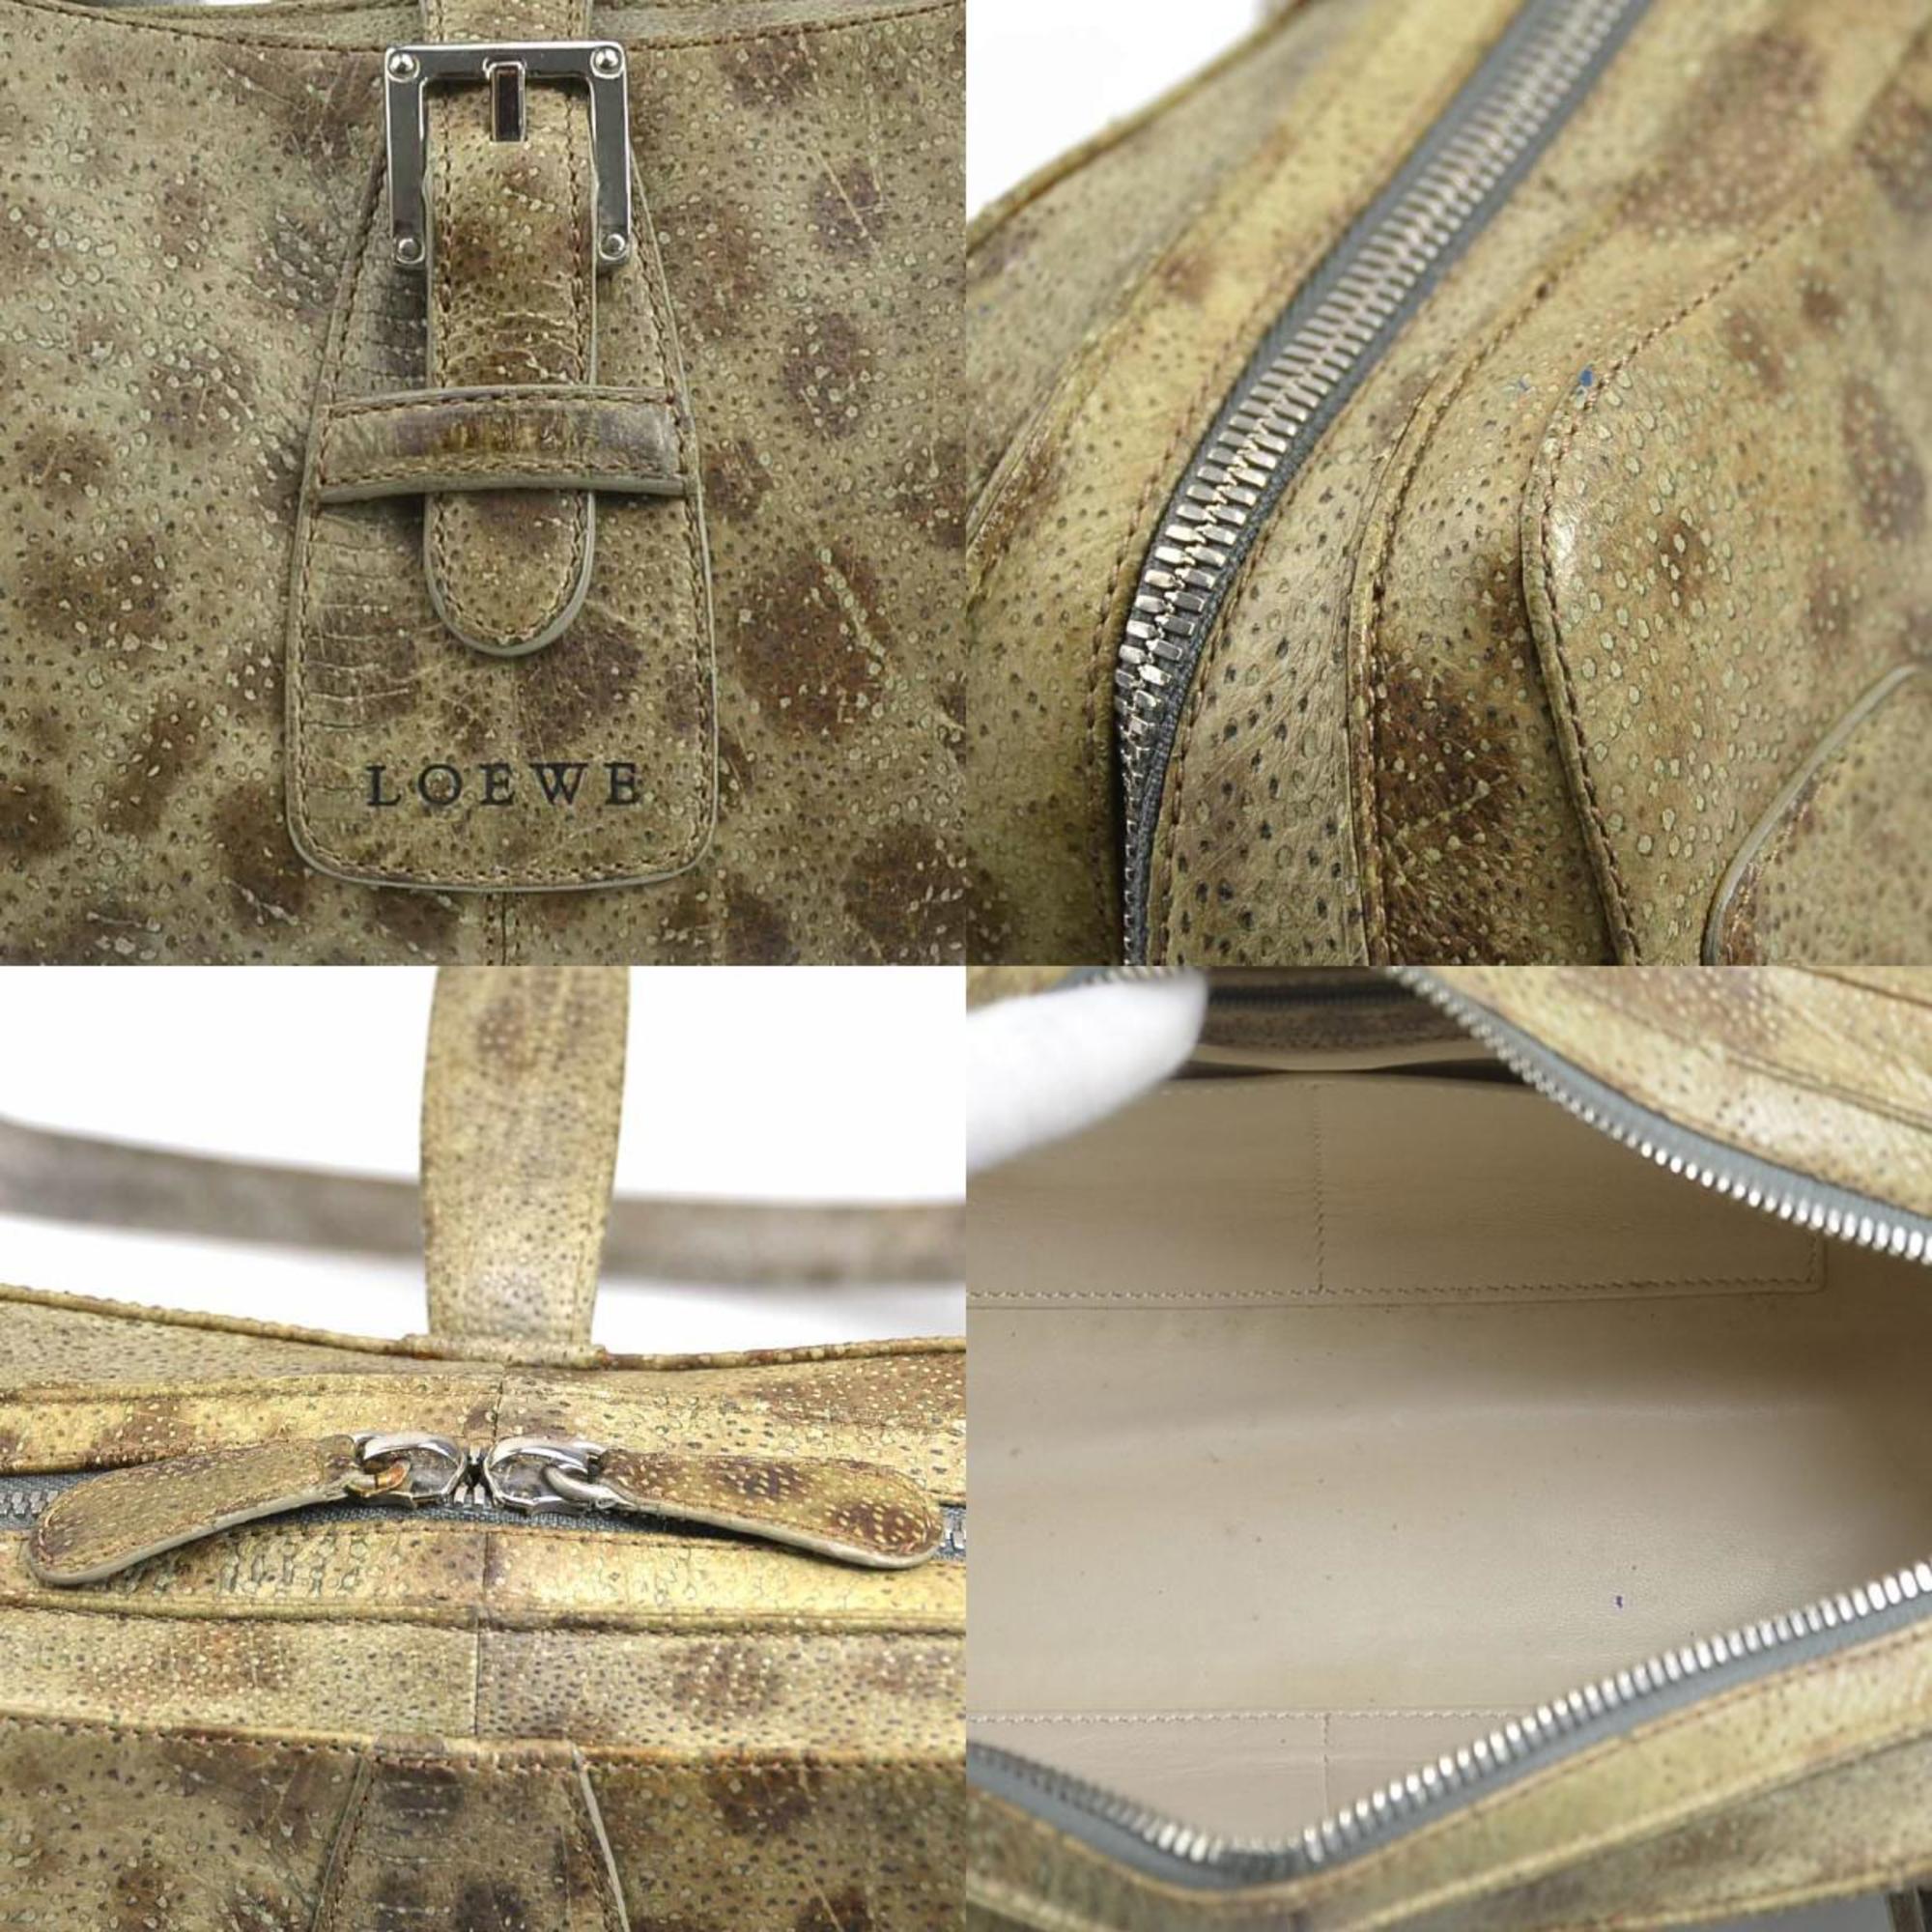 LOEWE Handbag Senda Leather Beige/Brown/Gray Silver Ladies